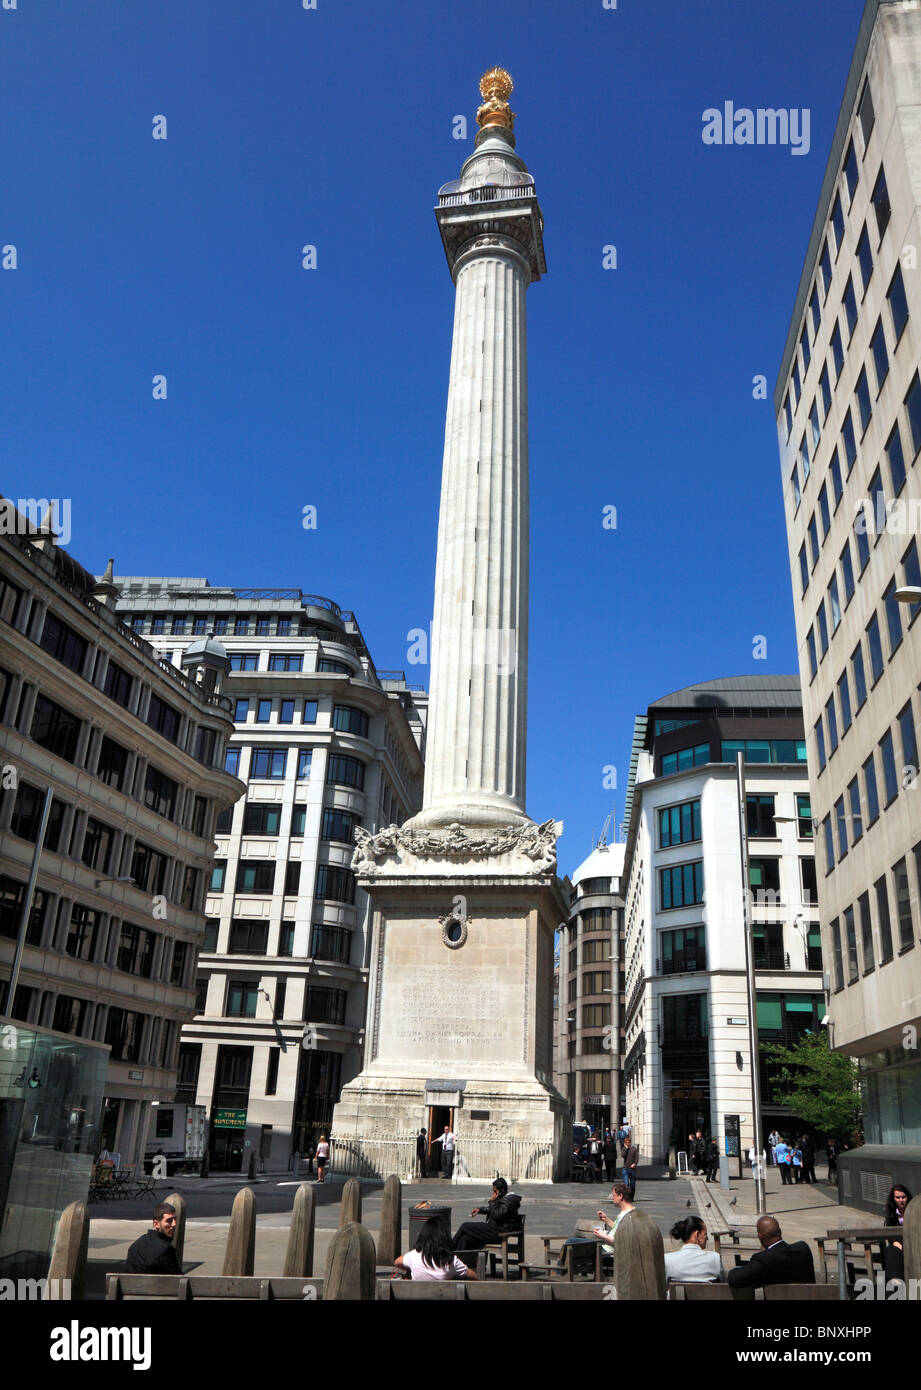 Das Denkmal in der City of London, gebaut im Jahre 1677 zum Gedenken an den großen Brand von London. Stockfoto